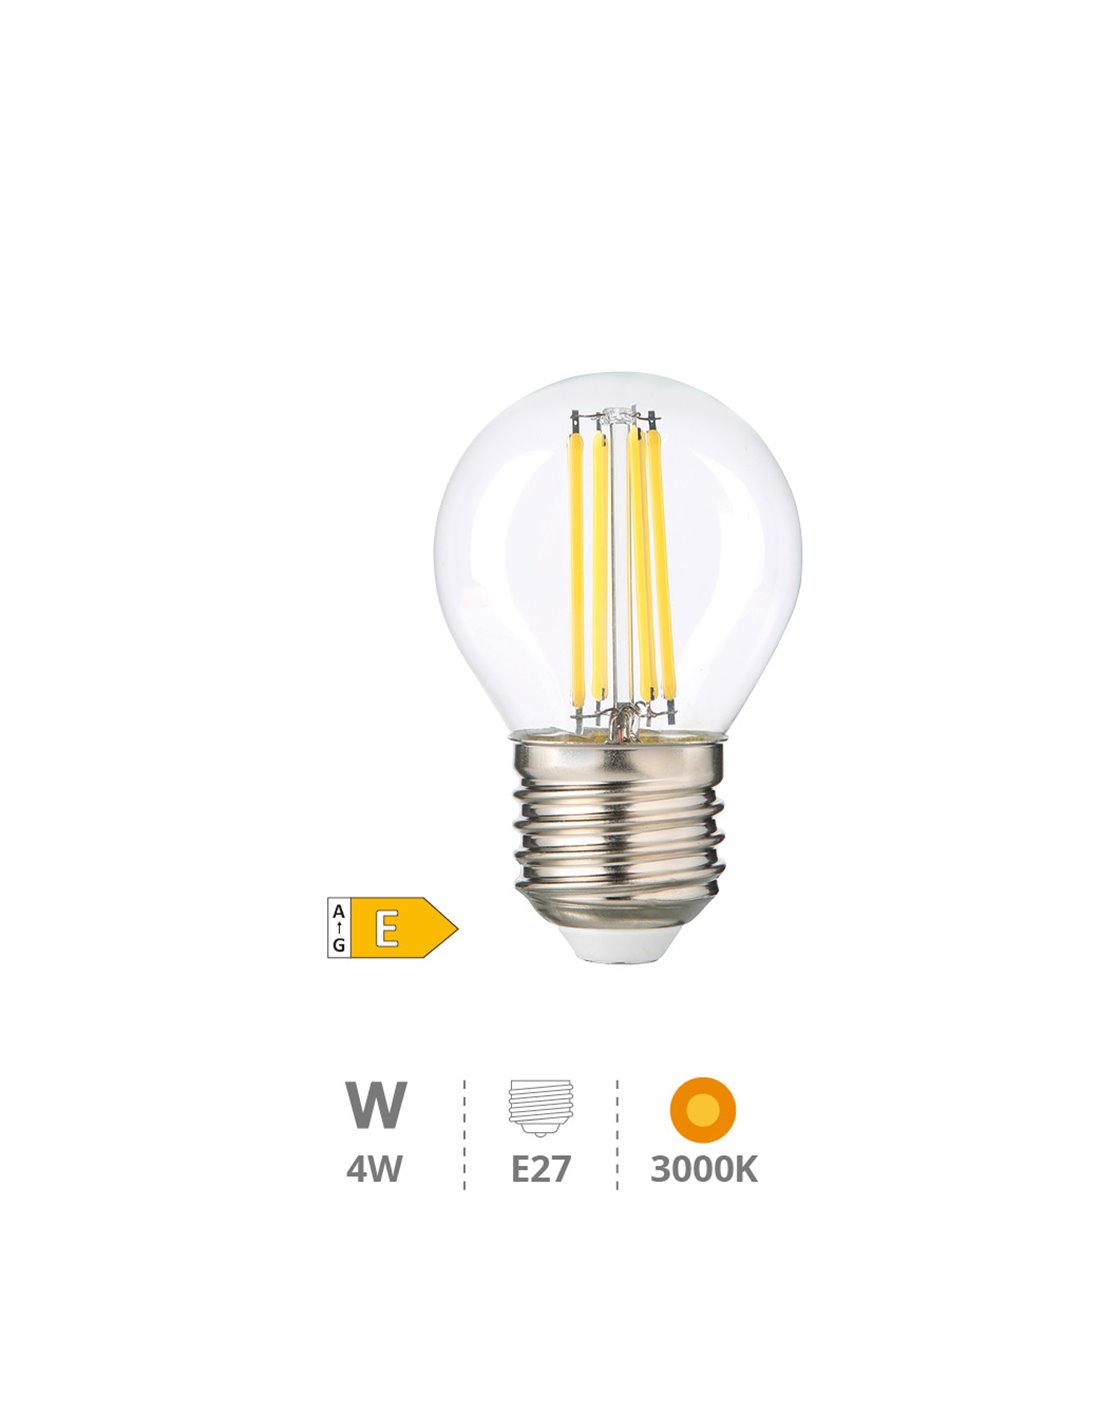 Ampoule LED sphérique E14 5W différentes tonalités - Ampoules LED  décoratives - Accessoires pour lampes